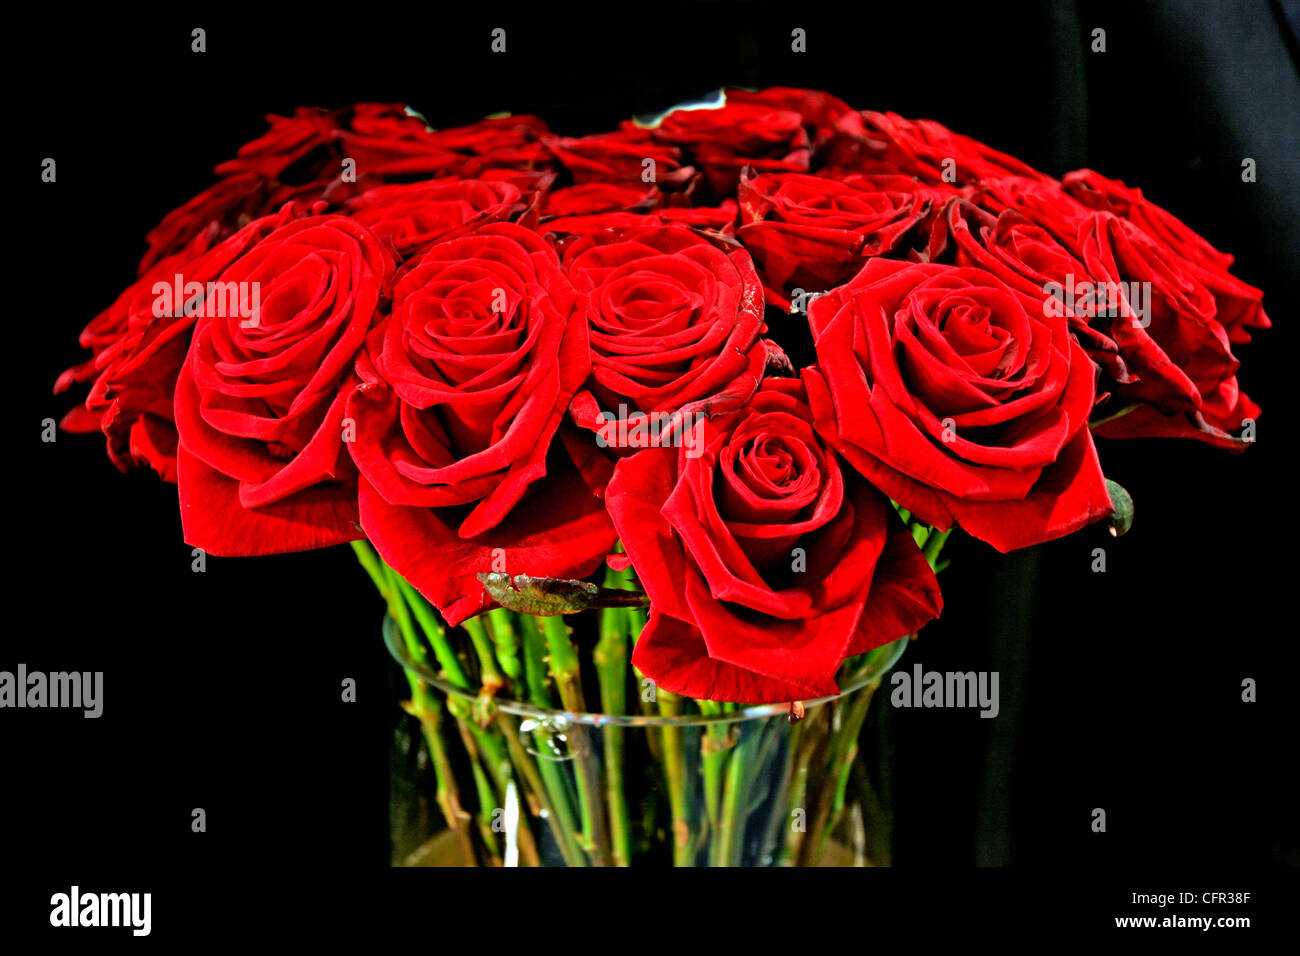 Ramo de rosas rojas. París. Francia. Stock Photo